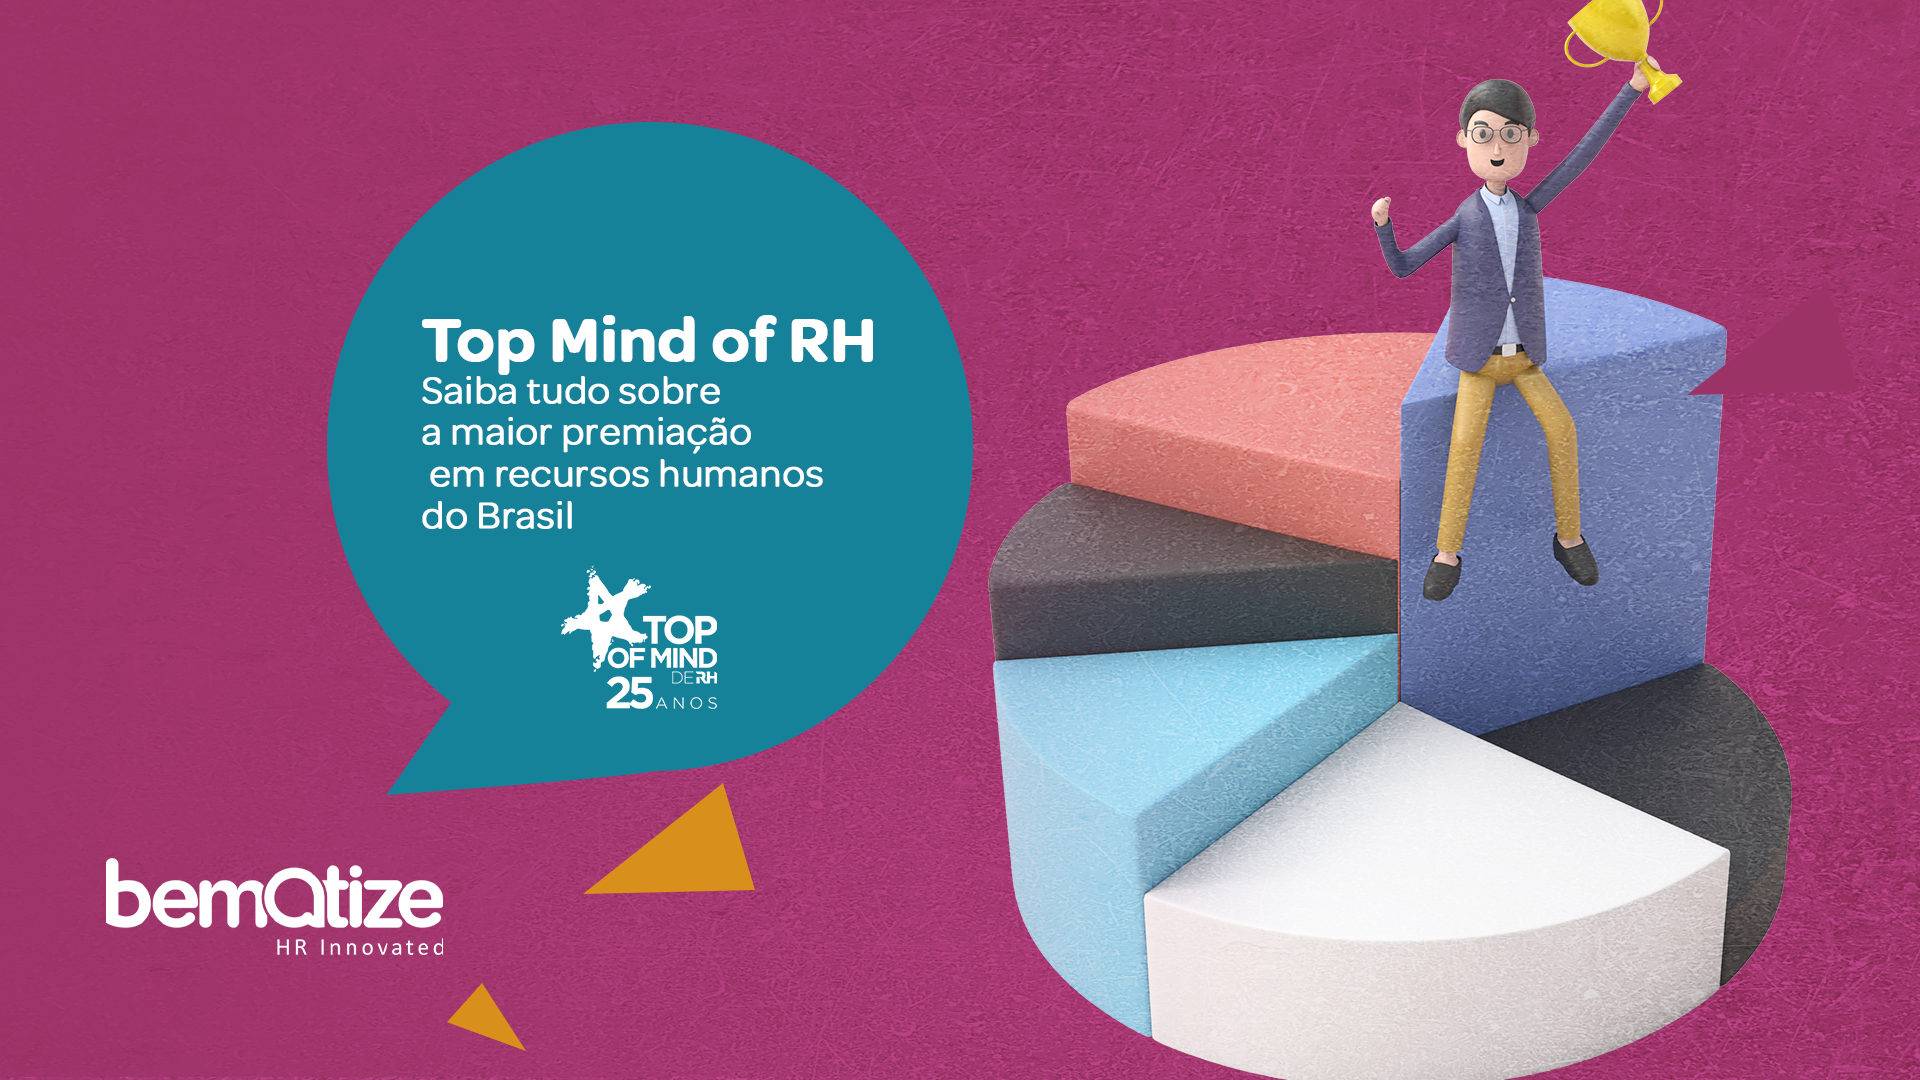 Top Mind of RH: Saiba tudo sobre uma das maiores premiações em recursos humanos